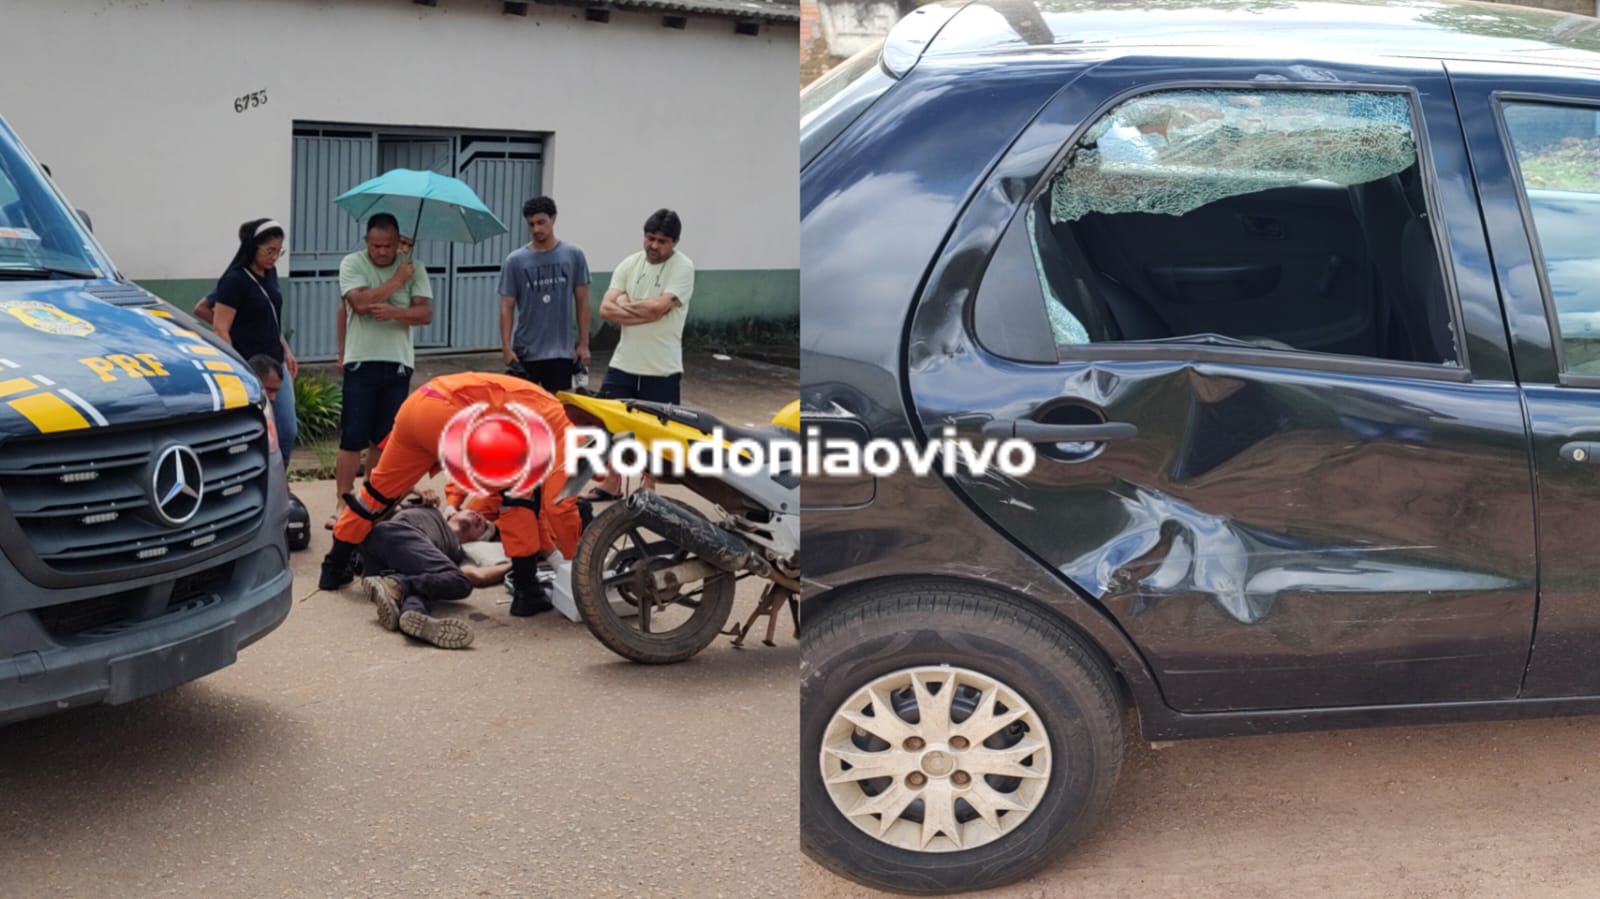 URGENTE: Motociclista sofre grave acidente ao avançar preferencial na capital